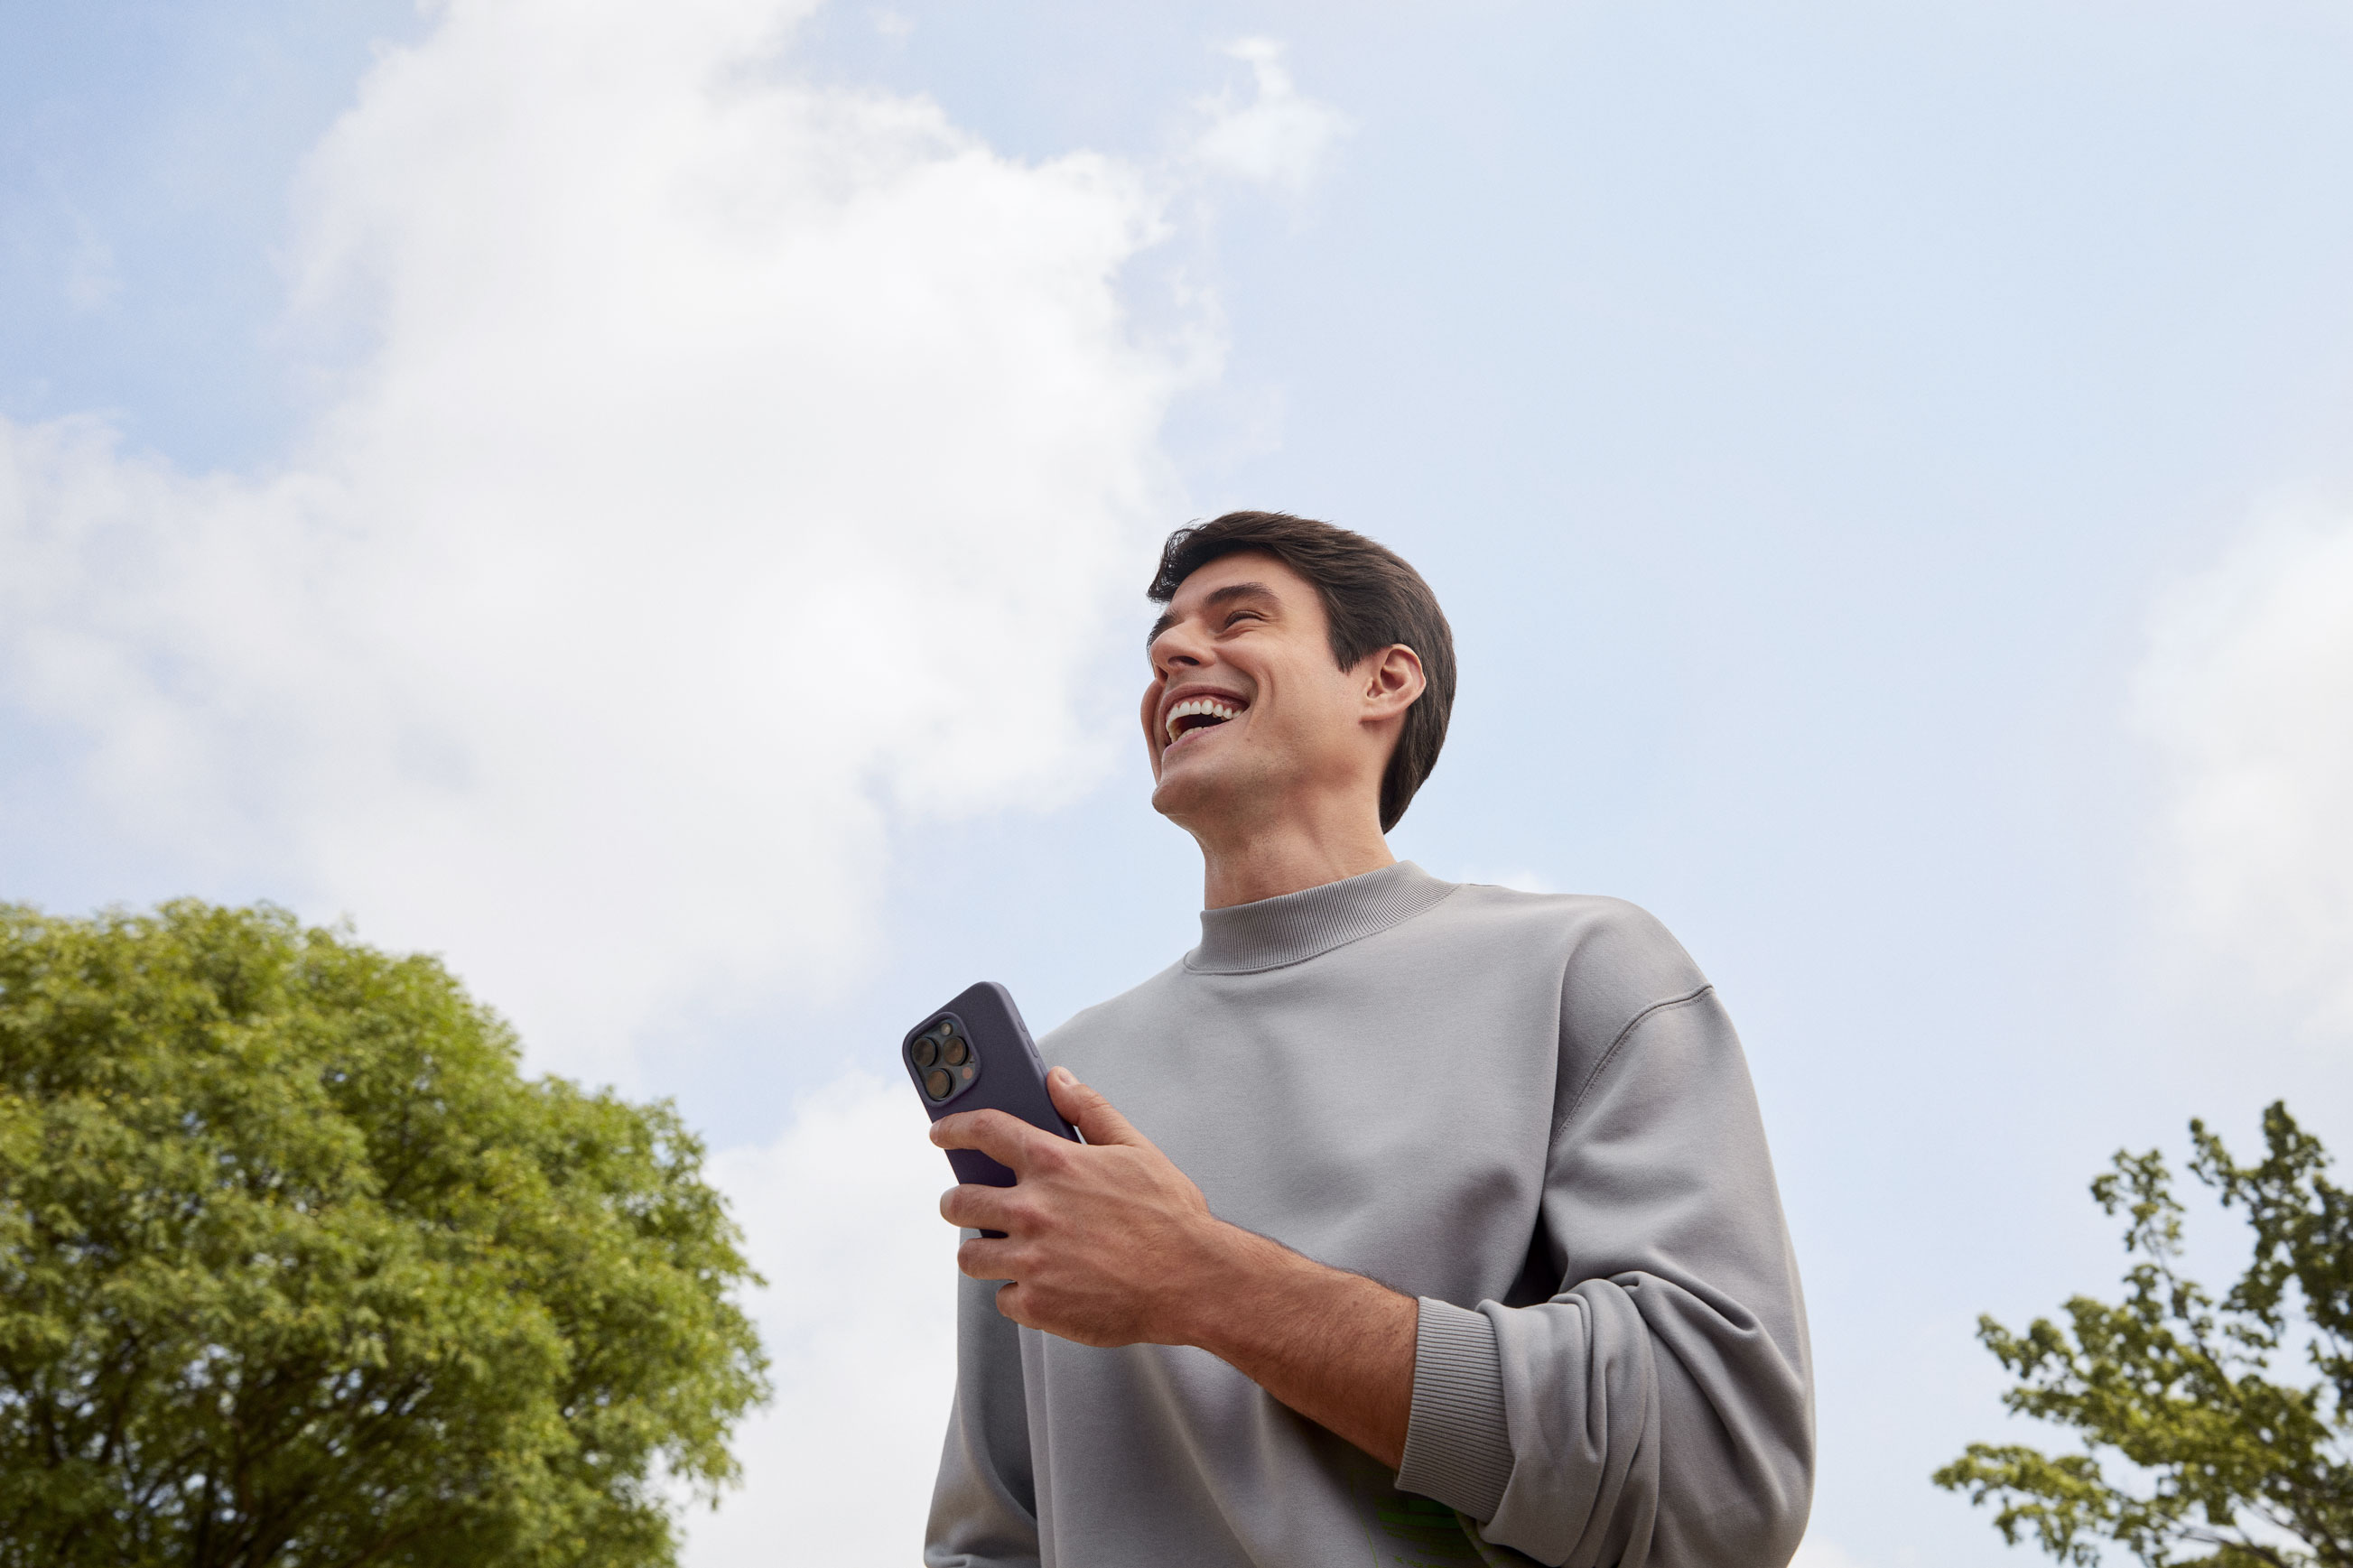 Homem branco sorrindo olhando para frente enquanto segura com a mão esquerda um celular, em um ambiente externo a luz do dia com nuvens no céu e uma árvore a sua esquerda e outra árvore a sua direita.